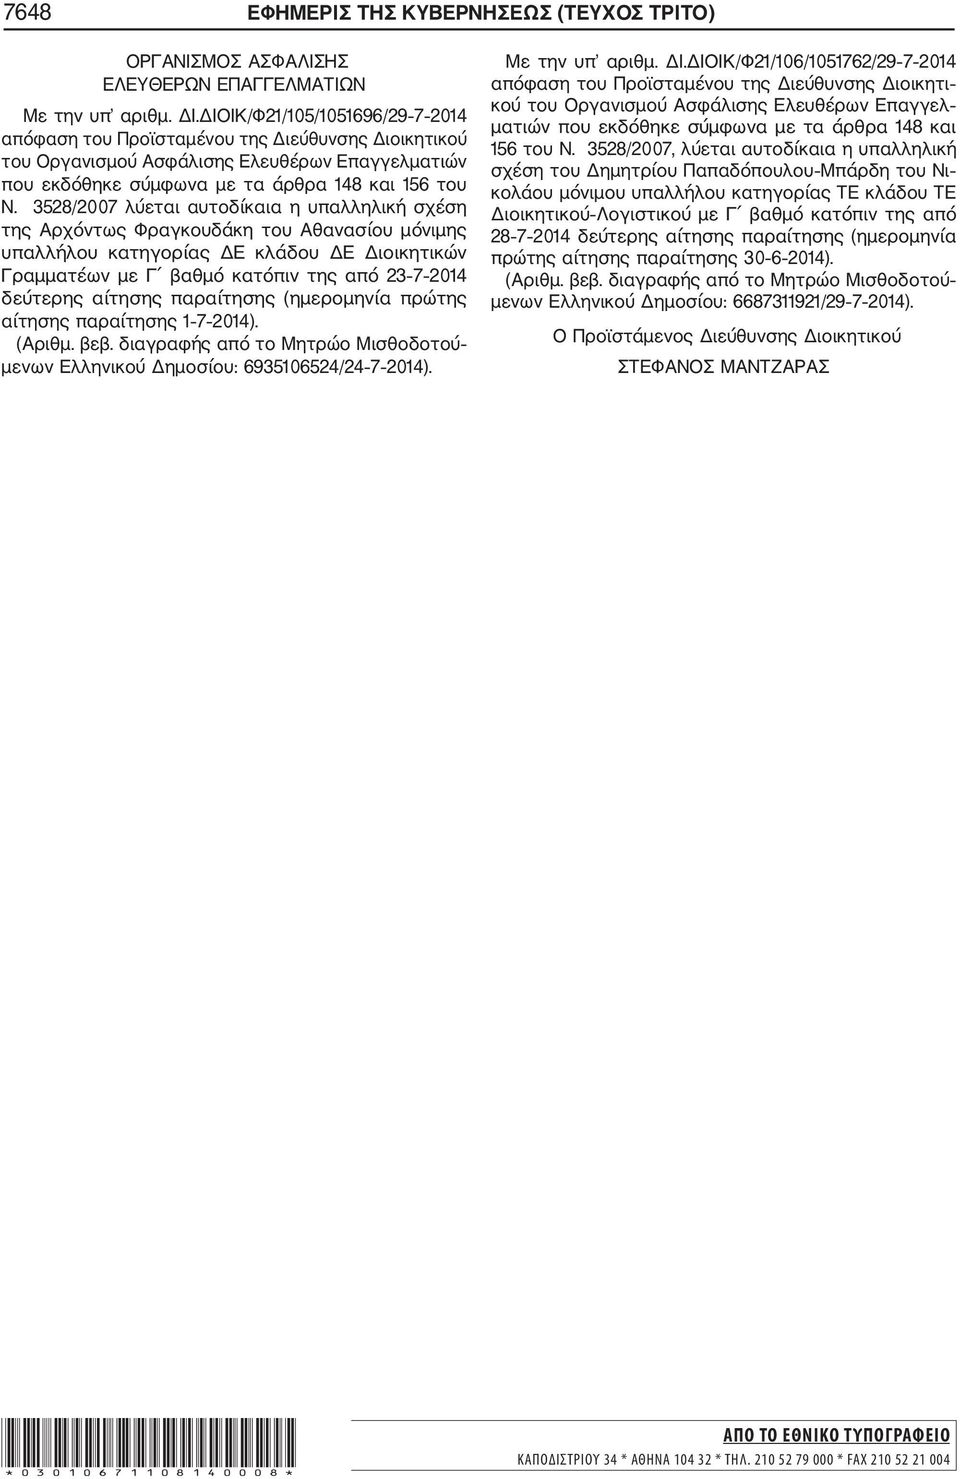 3528/2007 λύεται αυτοδίκαια η υπαλληλική σχέση της Αρχόντως Φραγκουδάκη του Αθανασίου μόνιμης υπαλλήλου κατηγορίας ΔΕ κλάδου ΔΕ Διοικητικών Γραμματέων με Γ βαθμό κατόπιν της από 23 7 2014 δεύτερης